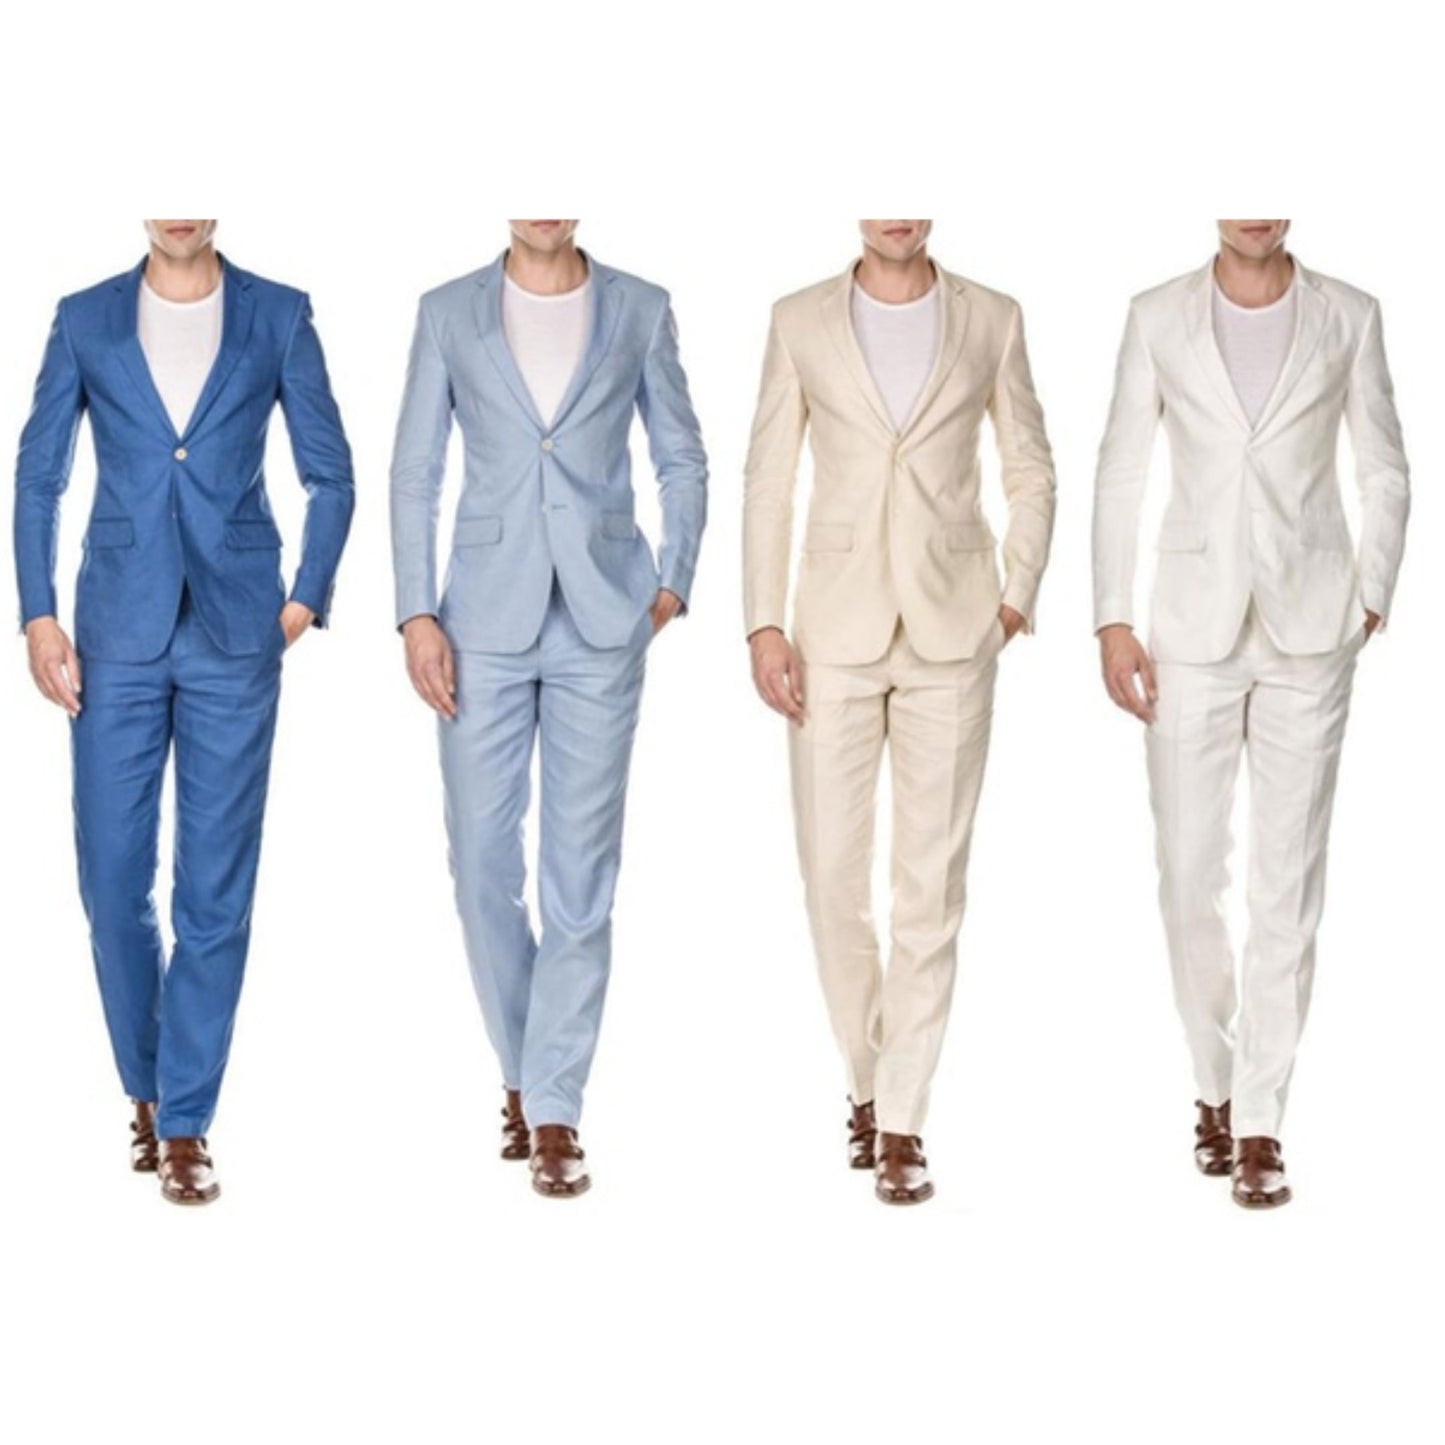 Linen Blue Two Piece Suit